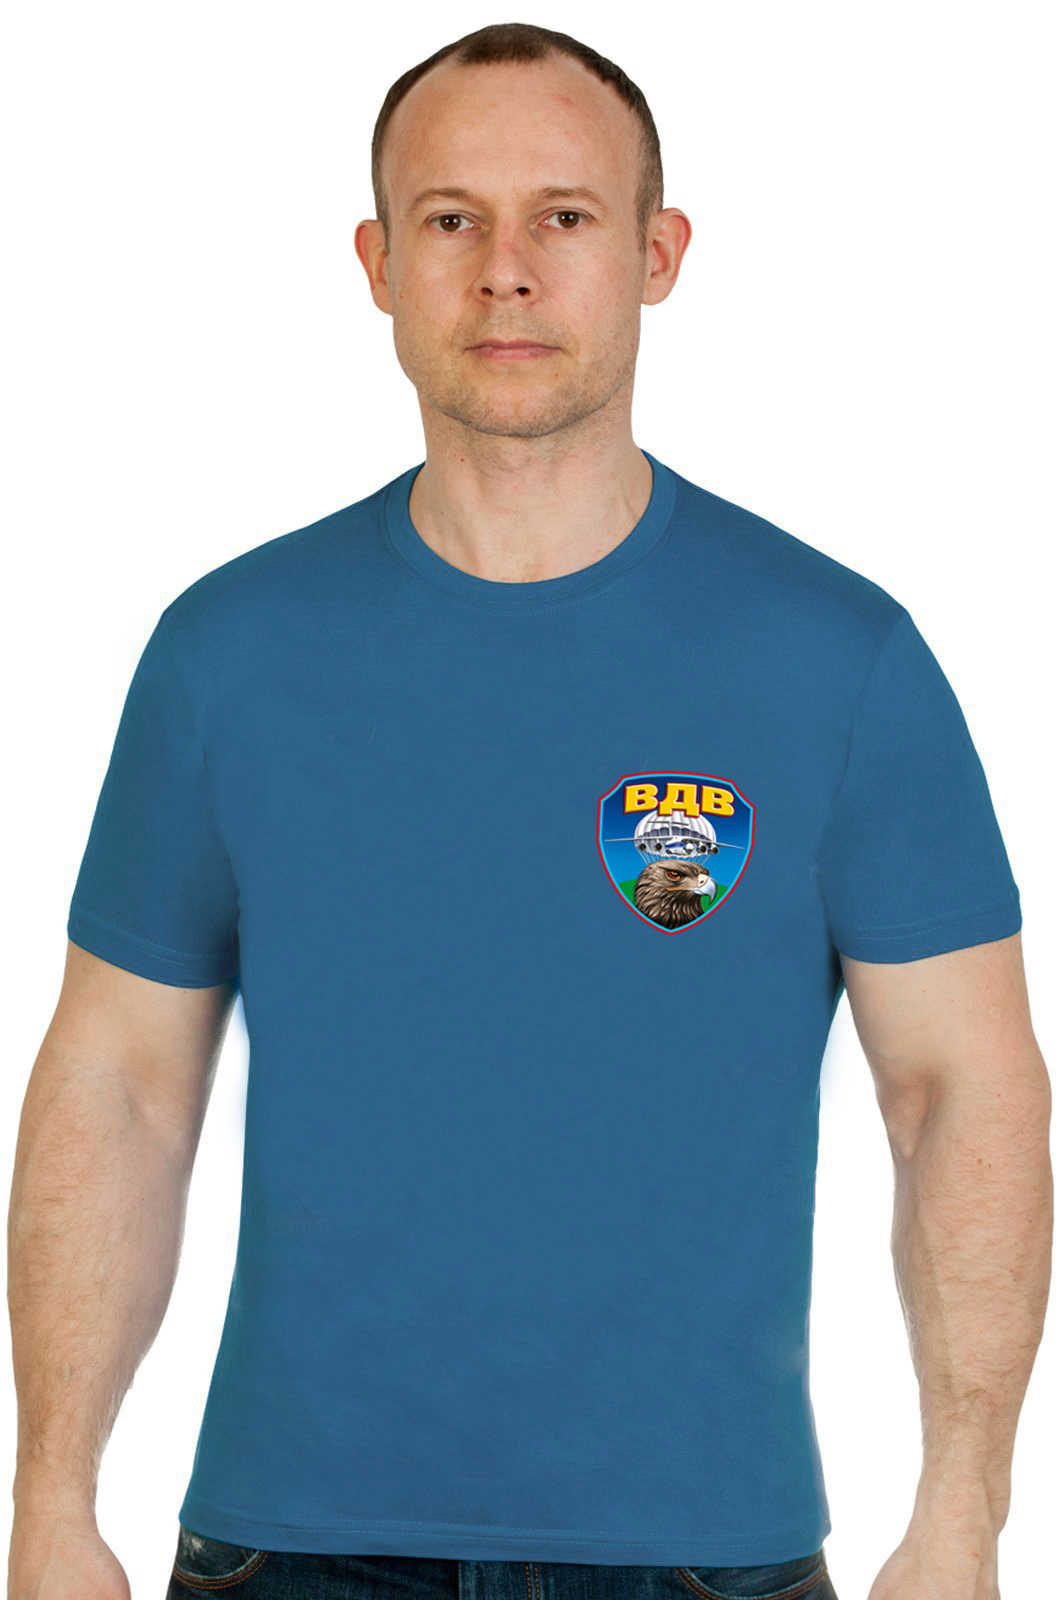 Бирюзовая футболка "ВДВ" с головой орла 